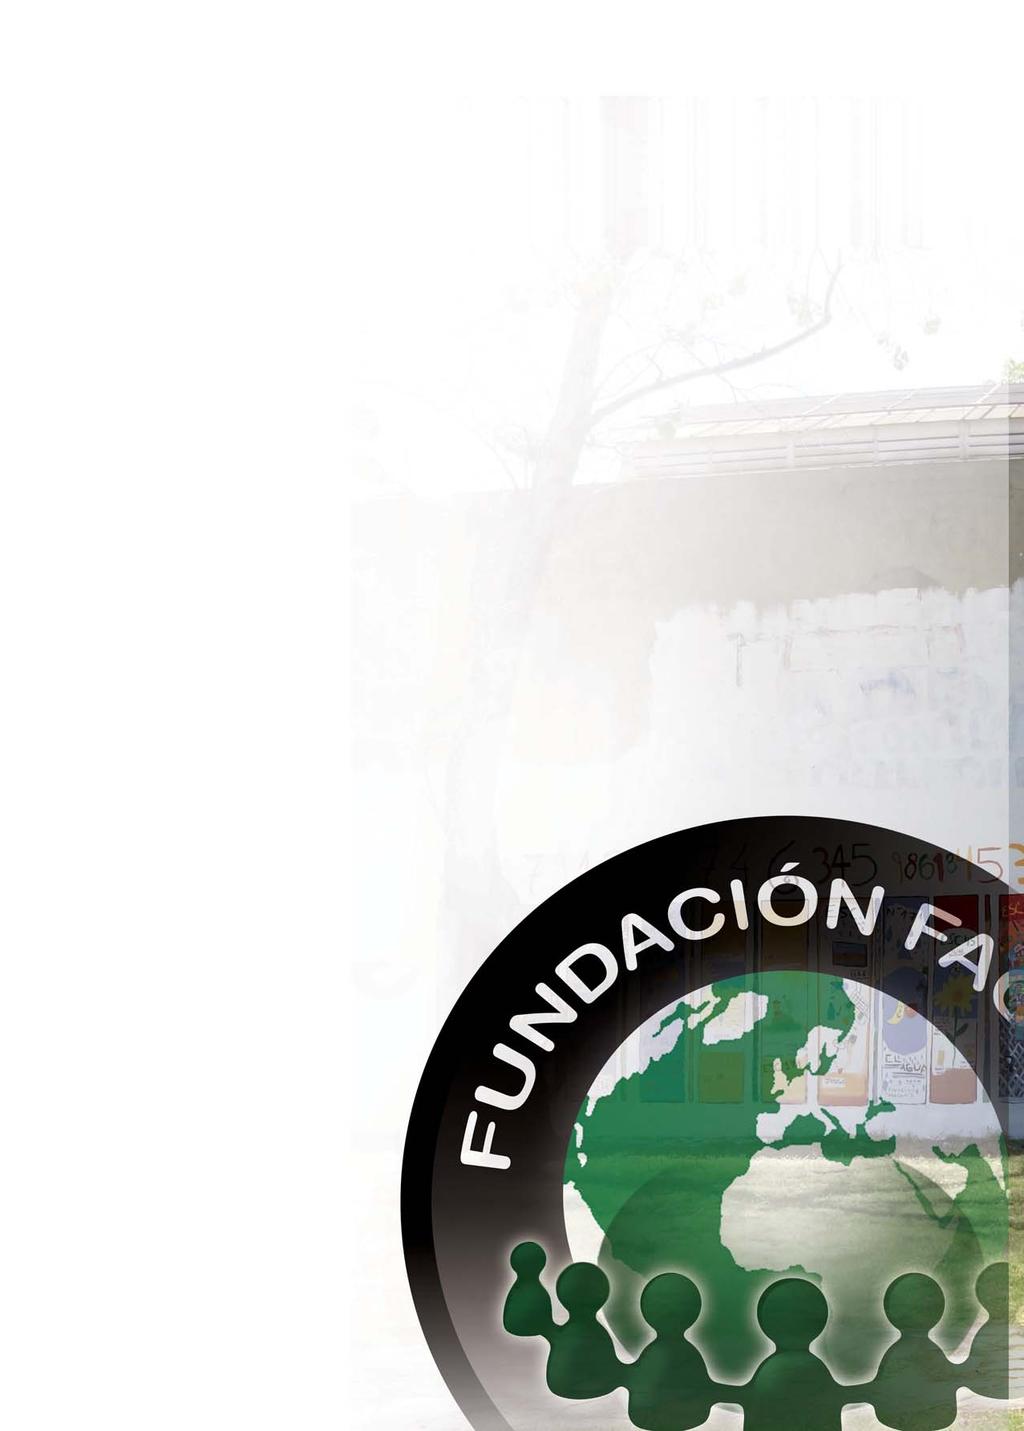 La Fundación FACUA está comprometida con la cooperación internacional y el consumo sostenible La Fundación FACUA para la Cooperación Internacional y el Consumo Sostenible es una institución creada